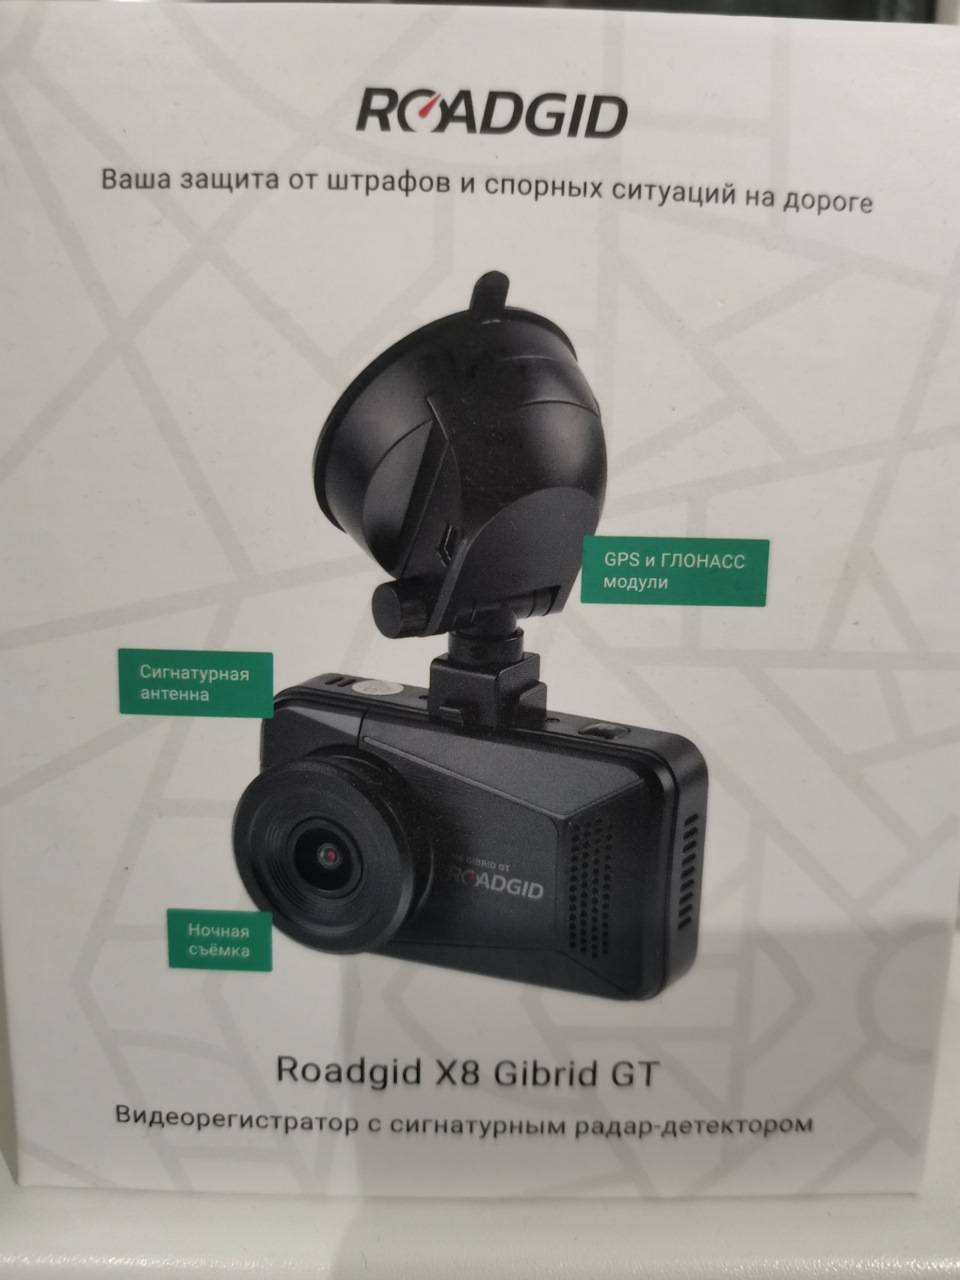 Обзор обновлённого видеорегистратора Roadgid X8 Gibrid GT с радар-детектором и Wi-Fi